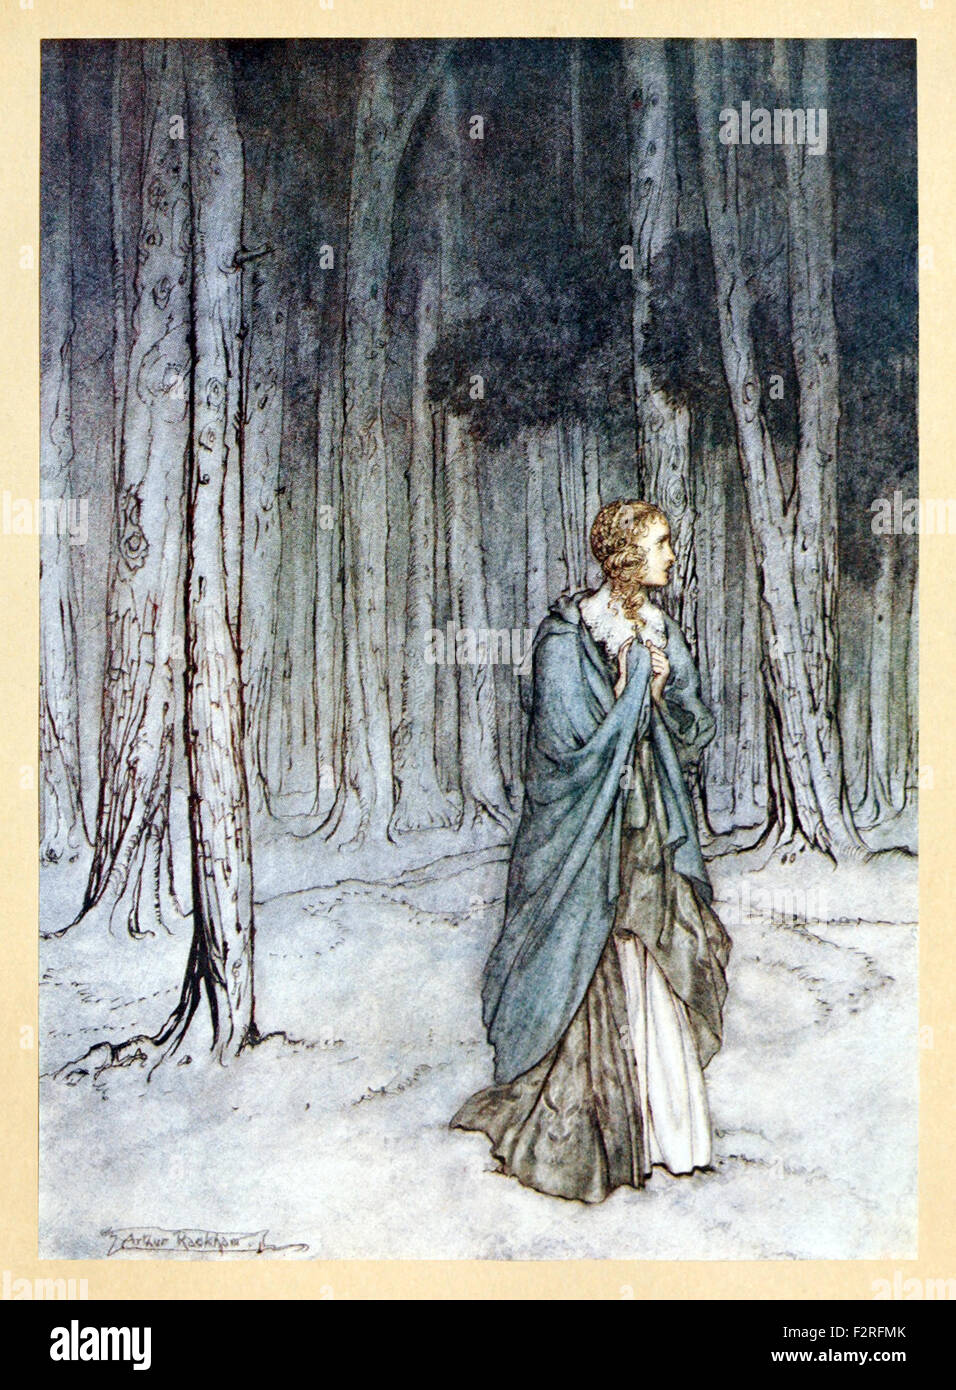 " La Signora entra nell' da 'Comus' da John Milton, illustrazione di Arthur Rackham (1867-1939). Vedere la descrizione per maggiori informazioni. Foto Stock